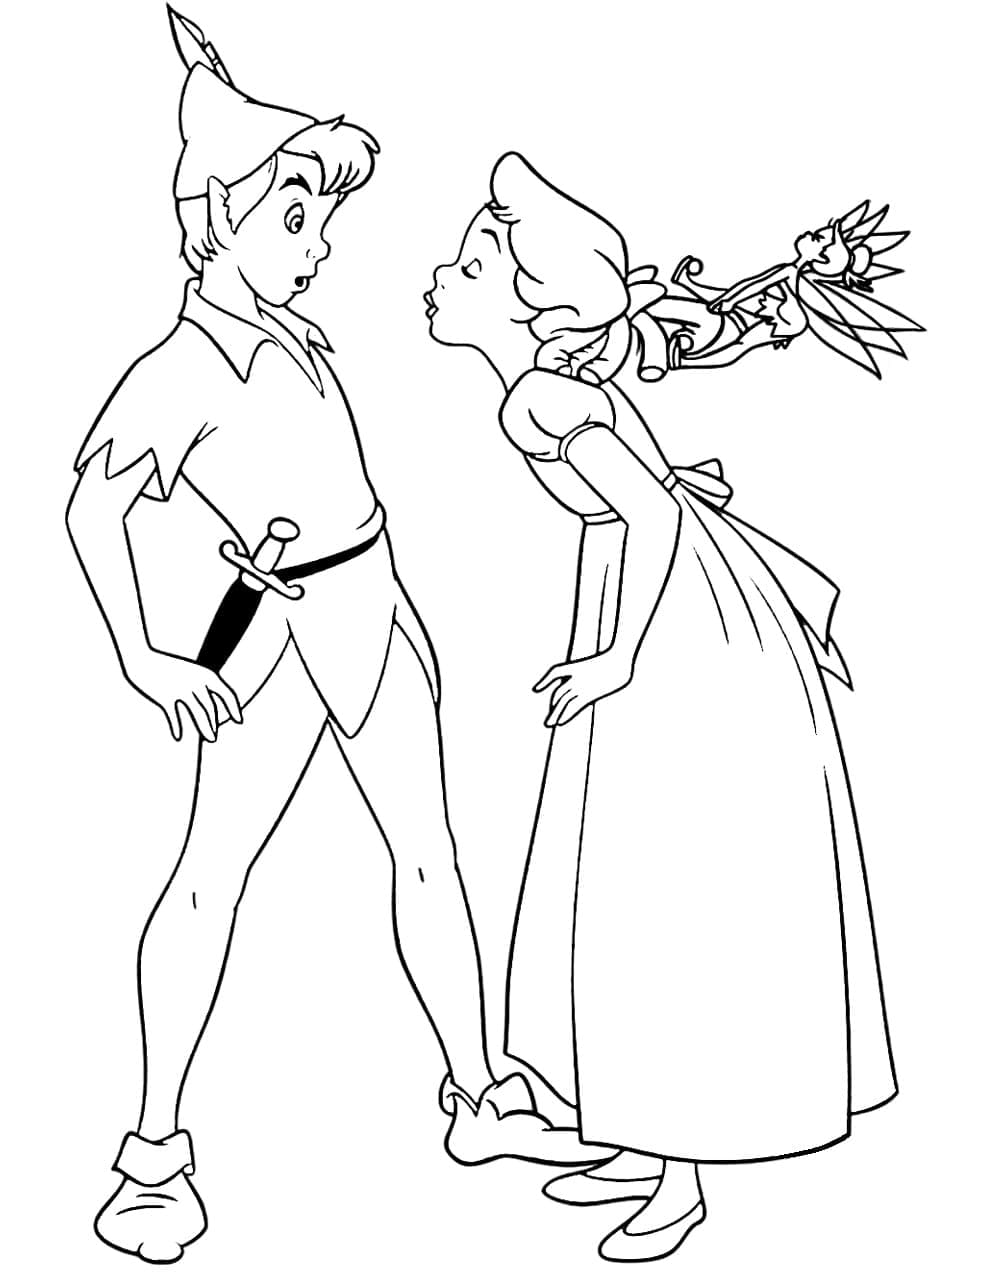 Peter Pan, Wendy et La Fée Clochette coloring page